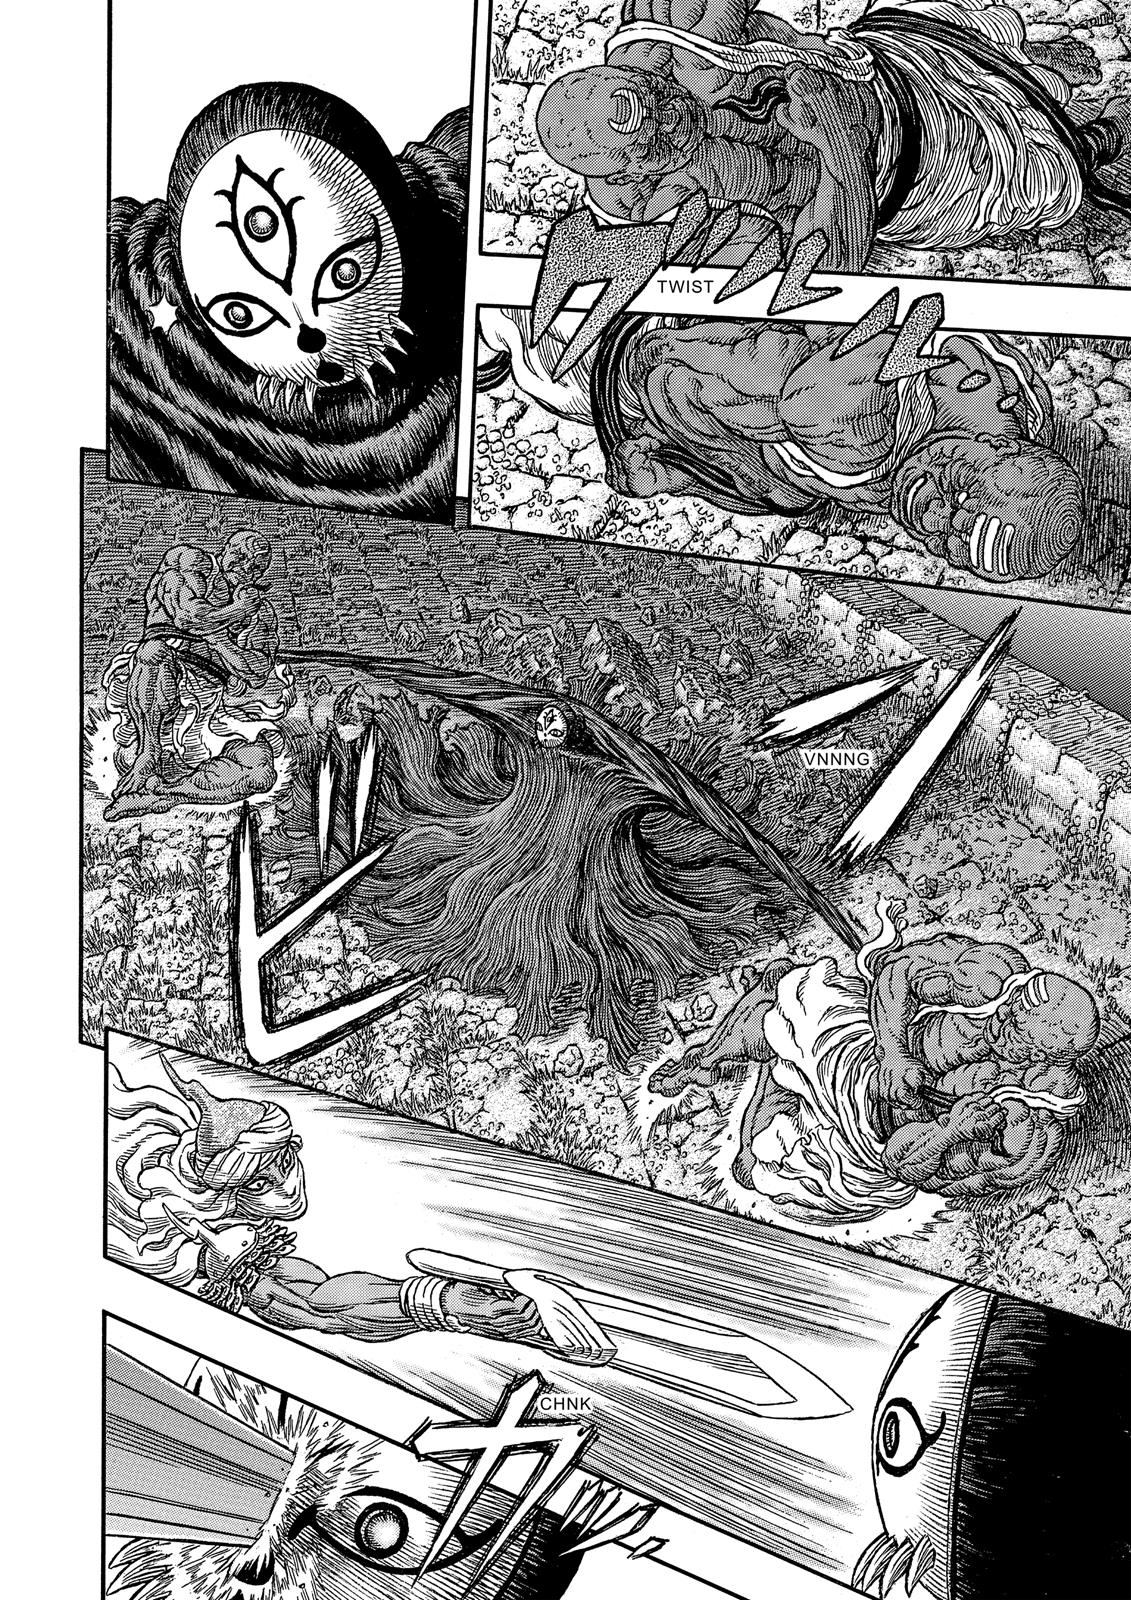 Berserk Manga Chapter 339 image 07